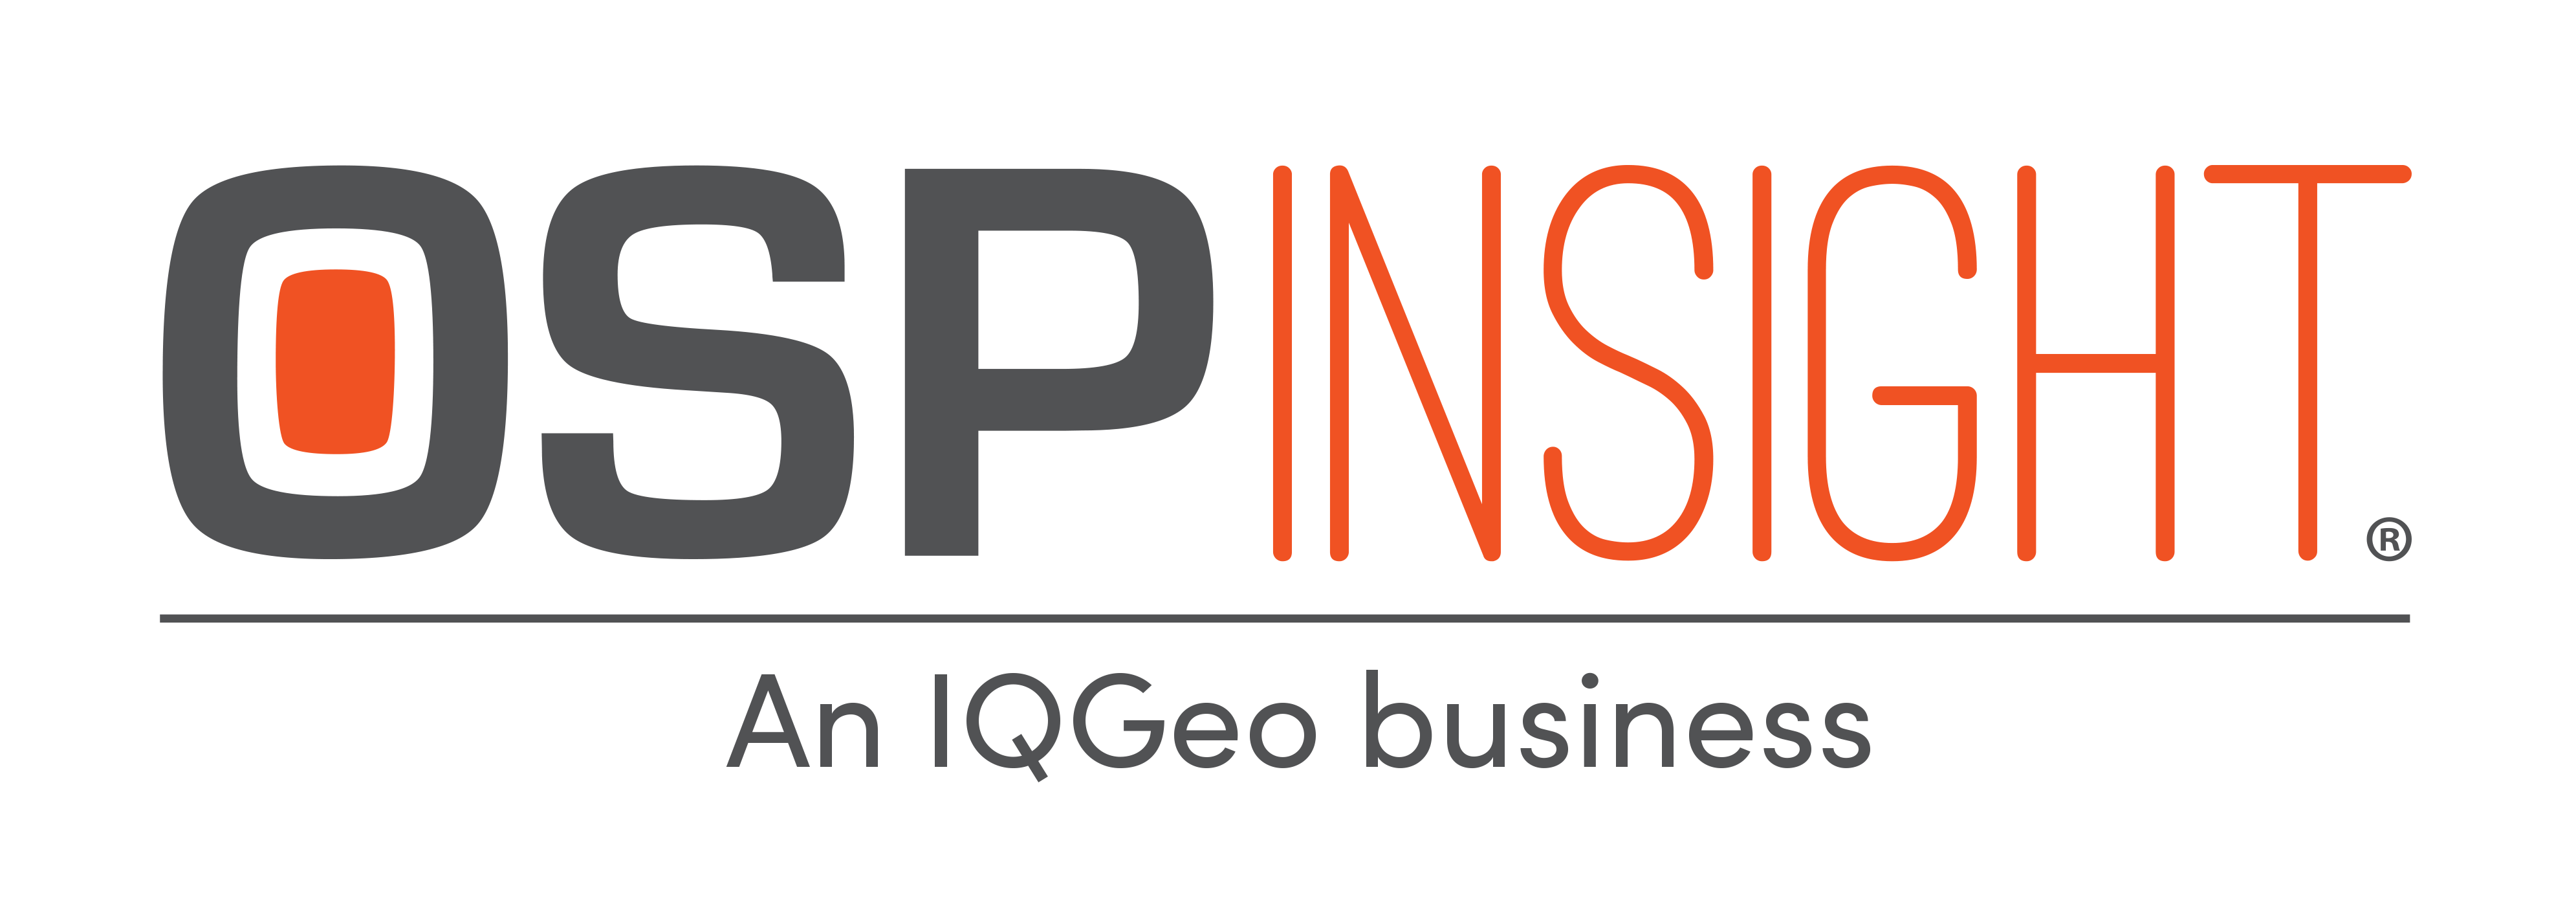 OSPInsight - An IQGeo Business-1